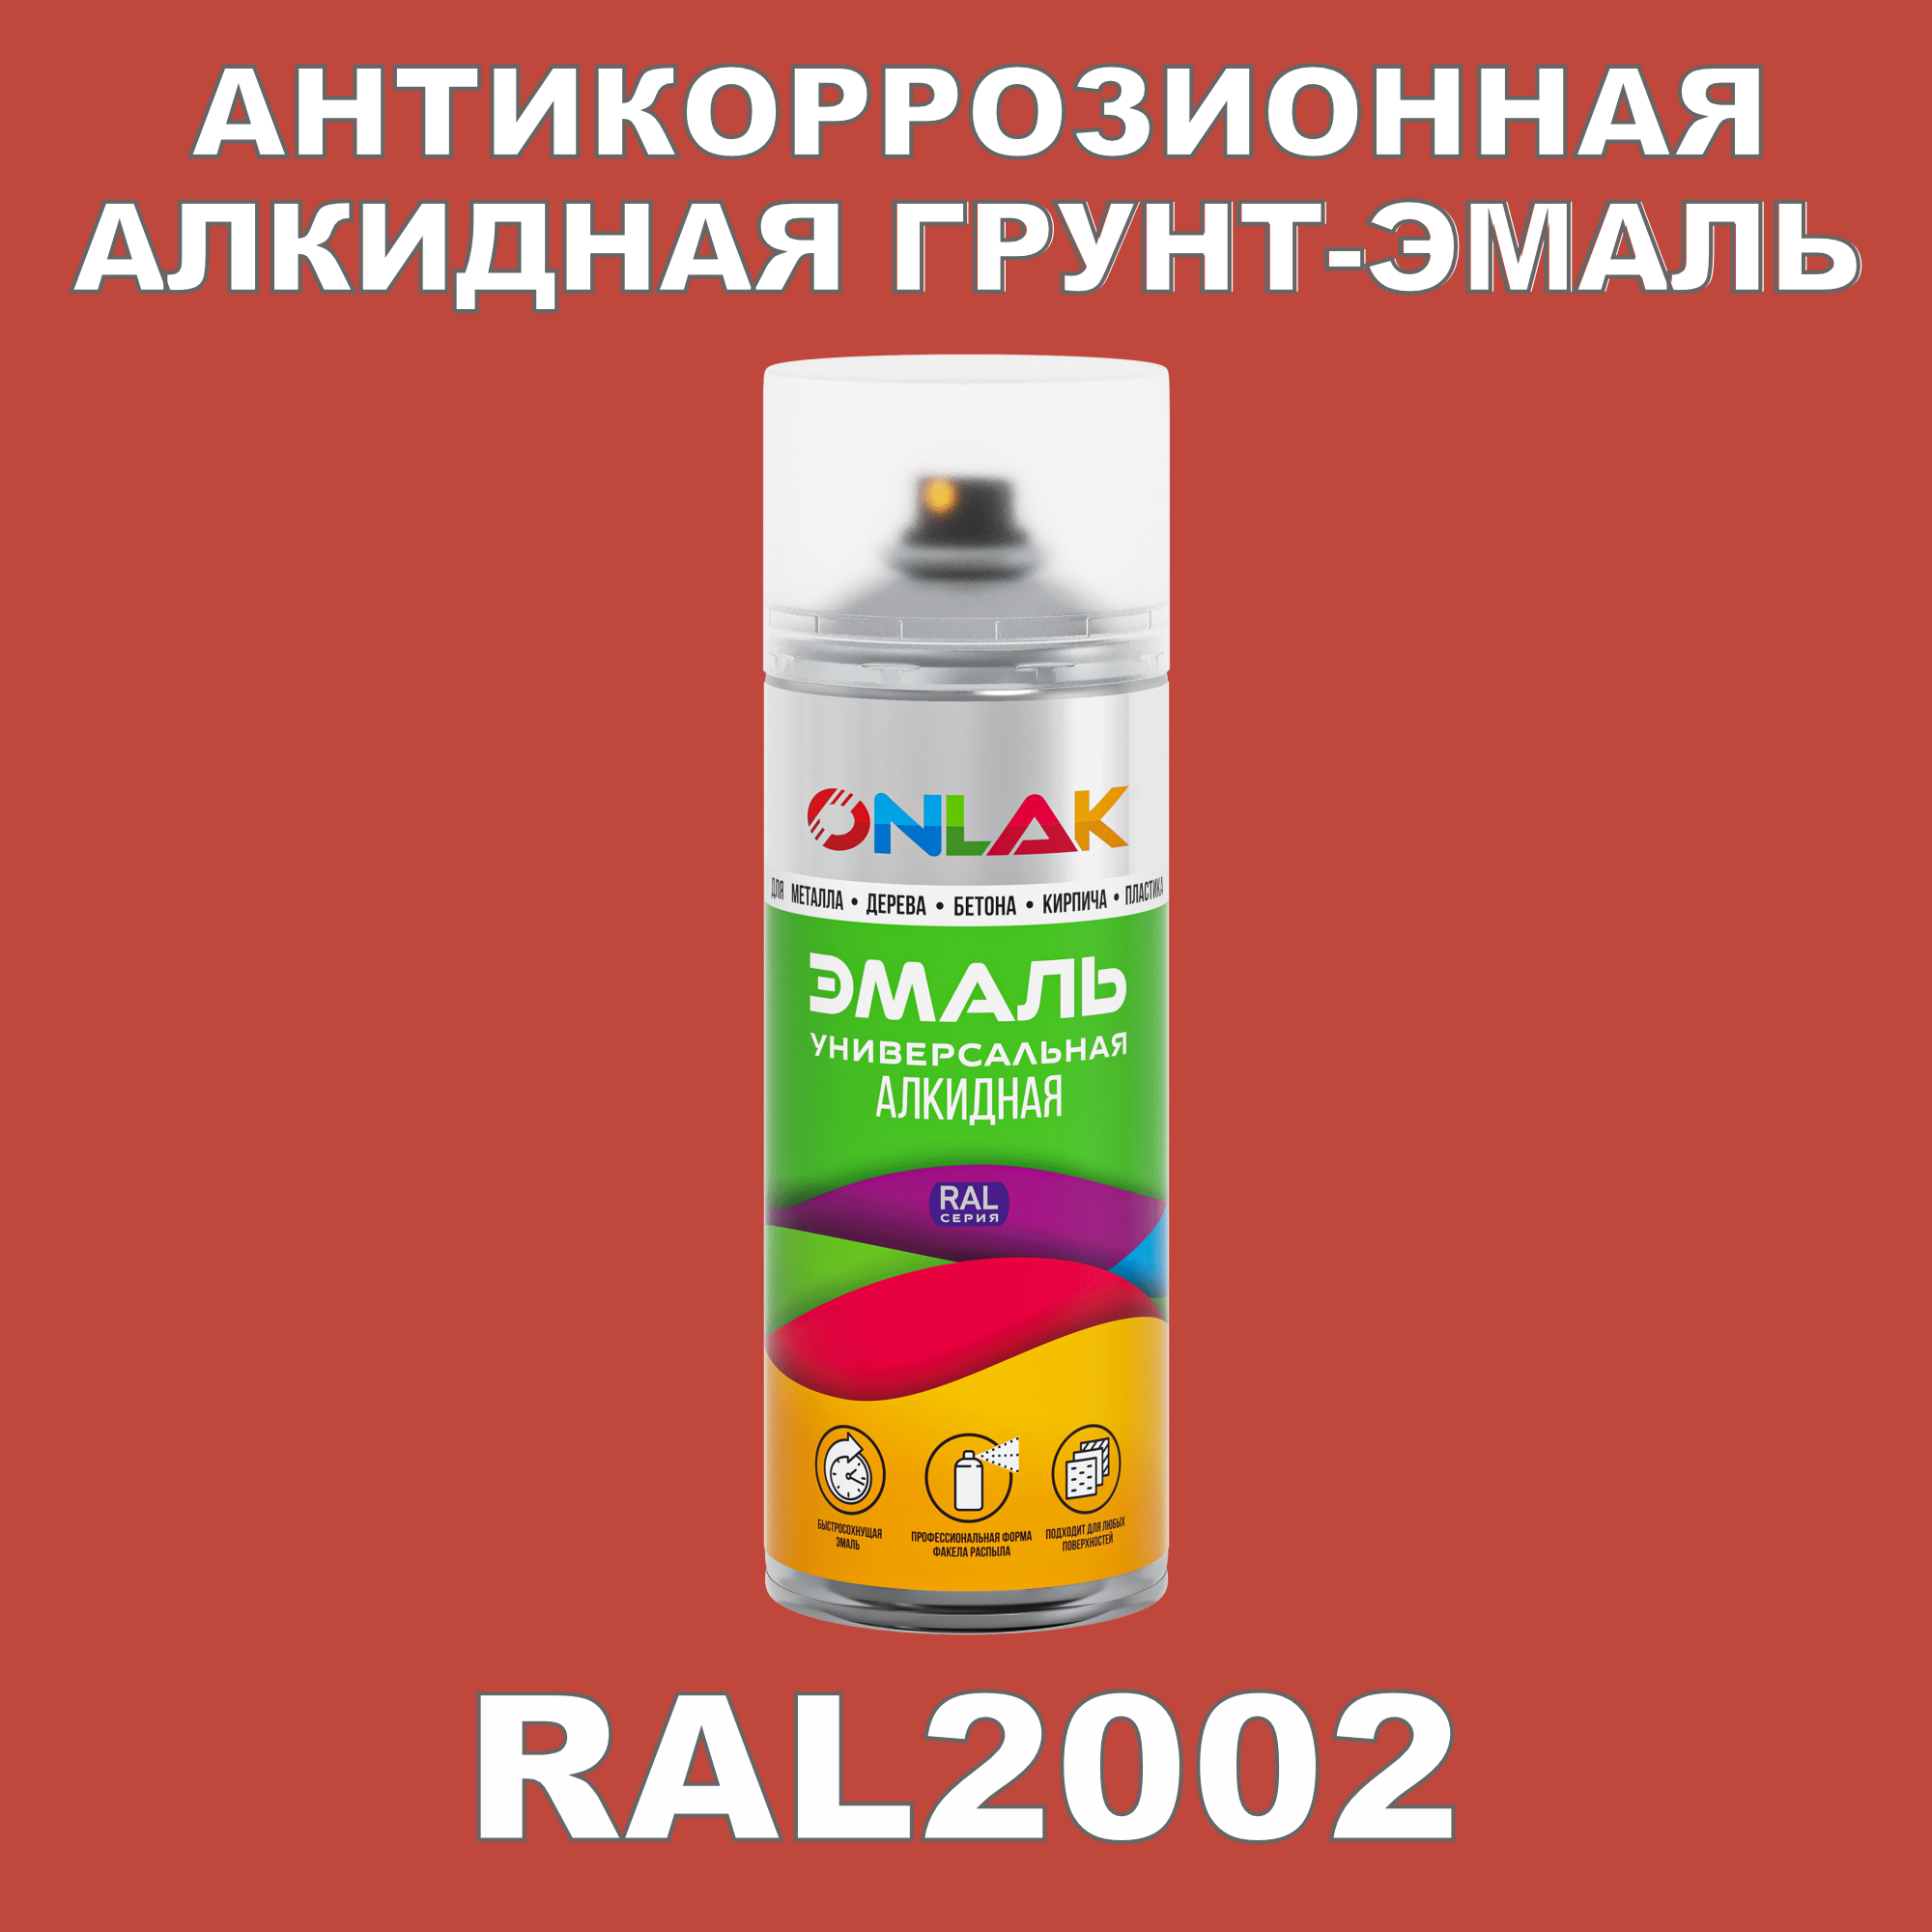 Антикоррозионная грунт-эмаль ONLAK RAL2002 полуматовая для металла и защиты от ржавчины